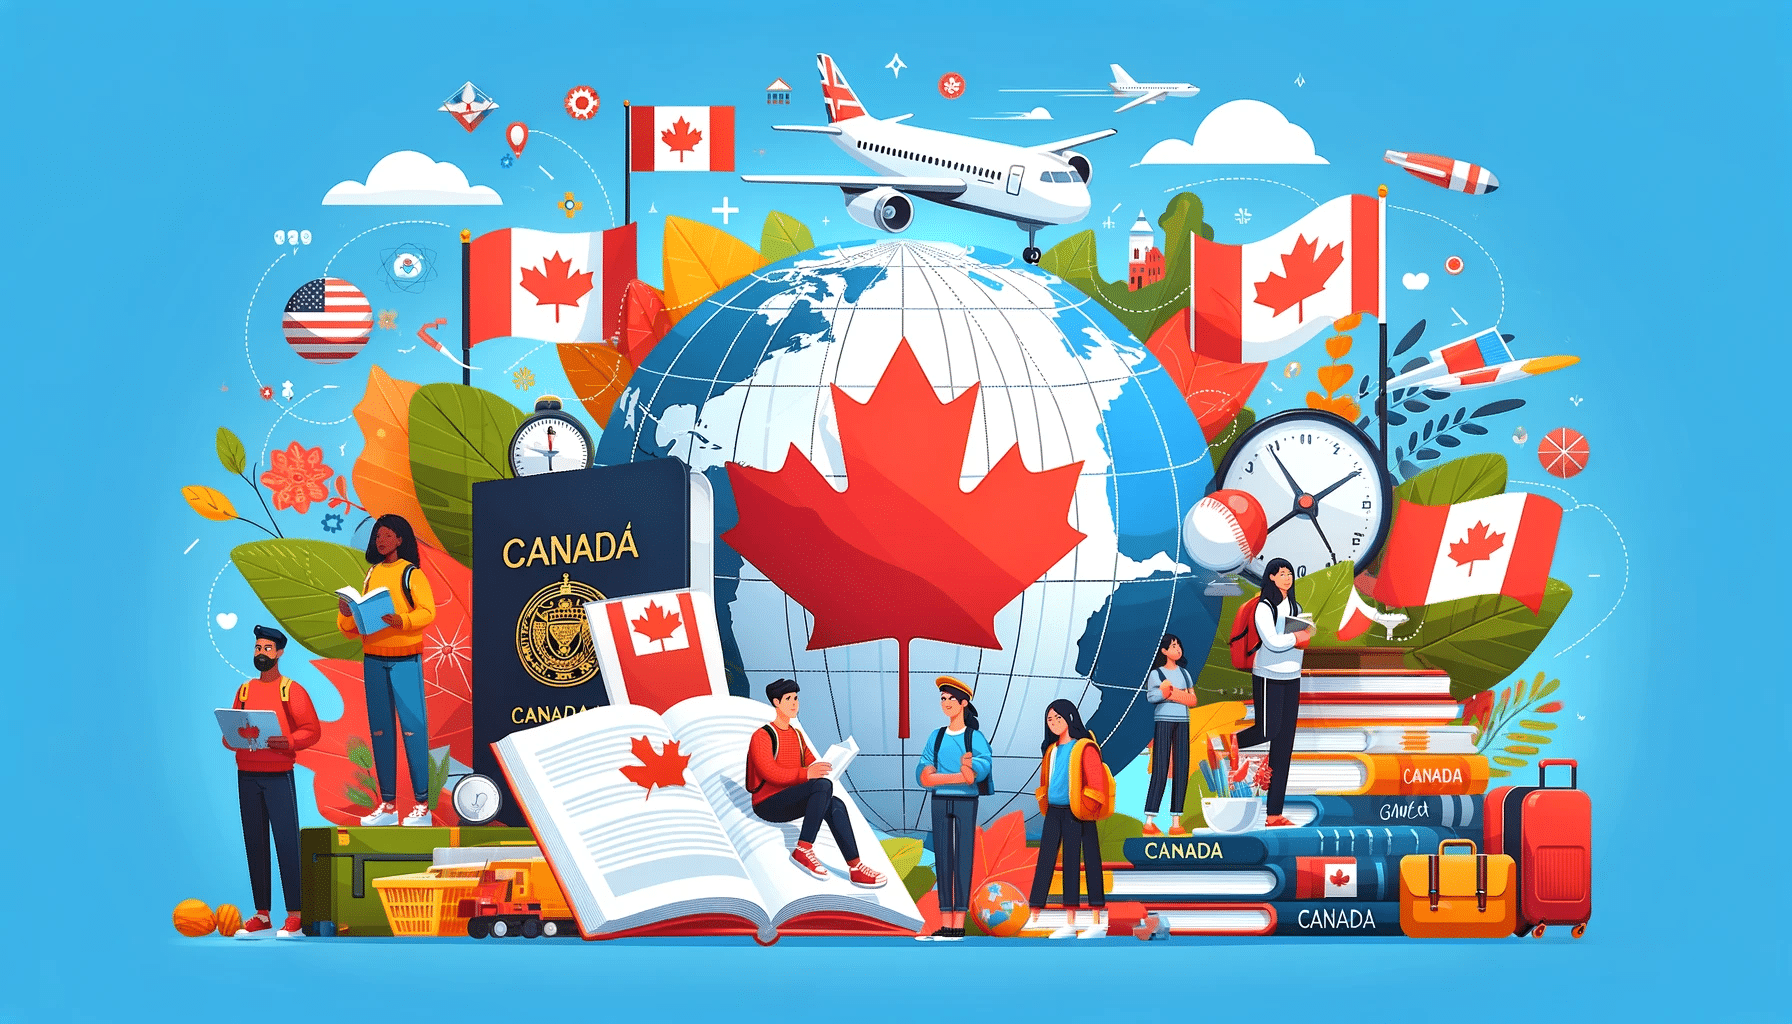 Estudiantes internacionales con libros delante de un mapa de Canadá, simbolizando la oportunidad educativa y la diversidad cultural en Canadá para estudiantes de todo el mundo.